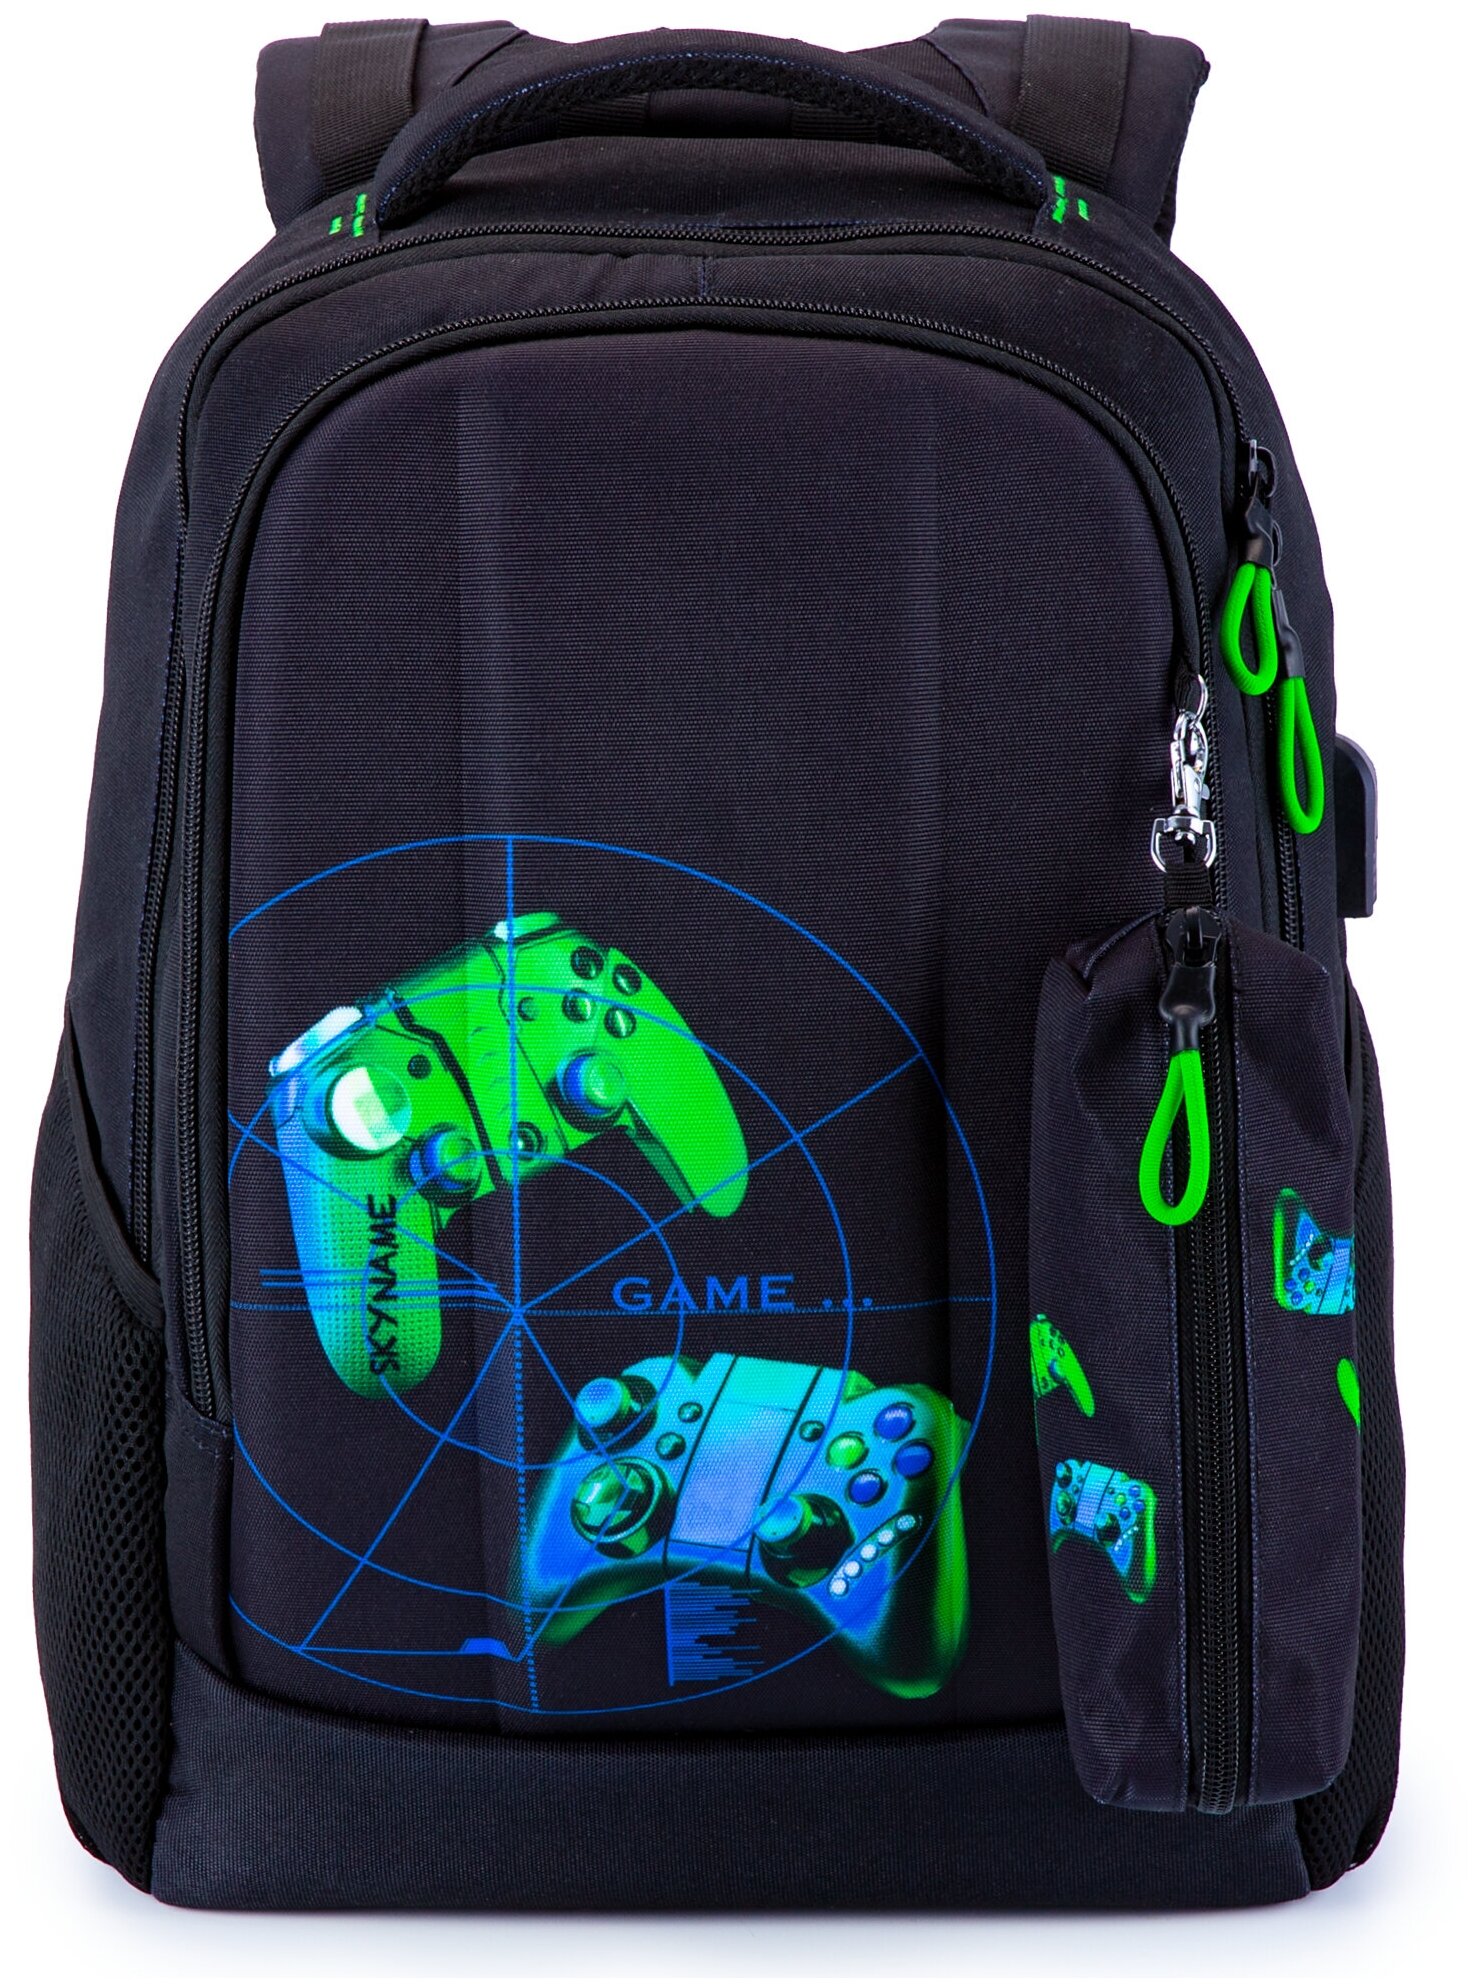 Рюкзак школьный для мальчика подростка 17,2 л А4 с анатомической спинкой SkyName (СкайНейм), с пеналом без наполнения и слотом USB